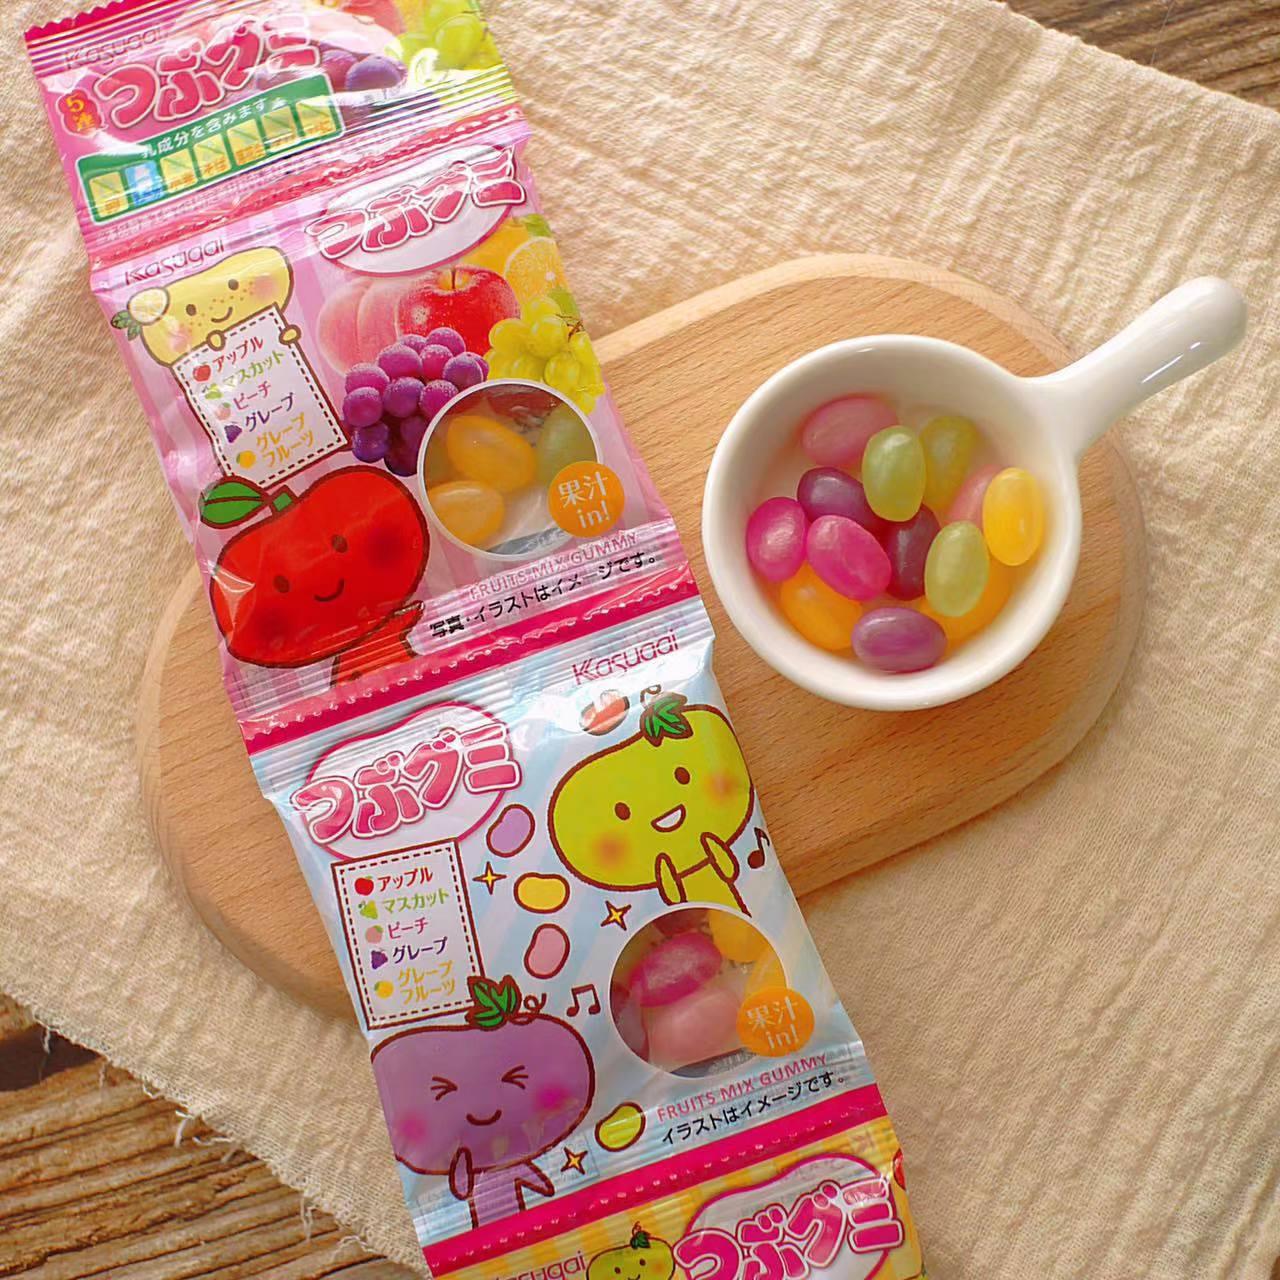 日本糖果 库存照片. 图片 包括有 甜甜, 五颜六色, 背包, 日本, 糖果, 乡愁, 空白, 传统, 便宜地 - 29360070